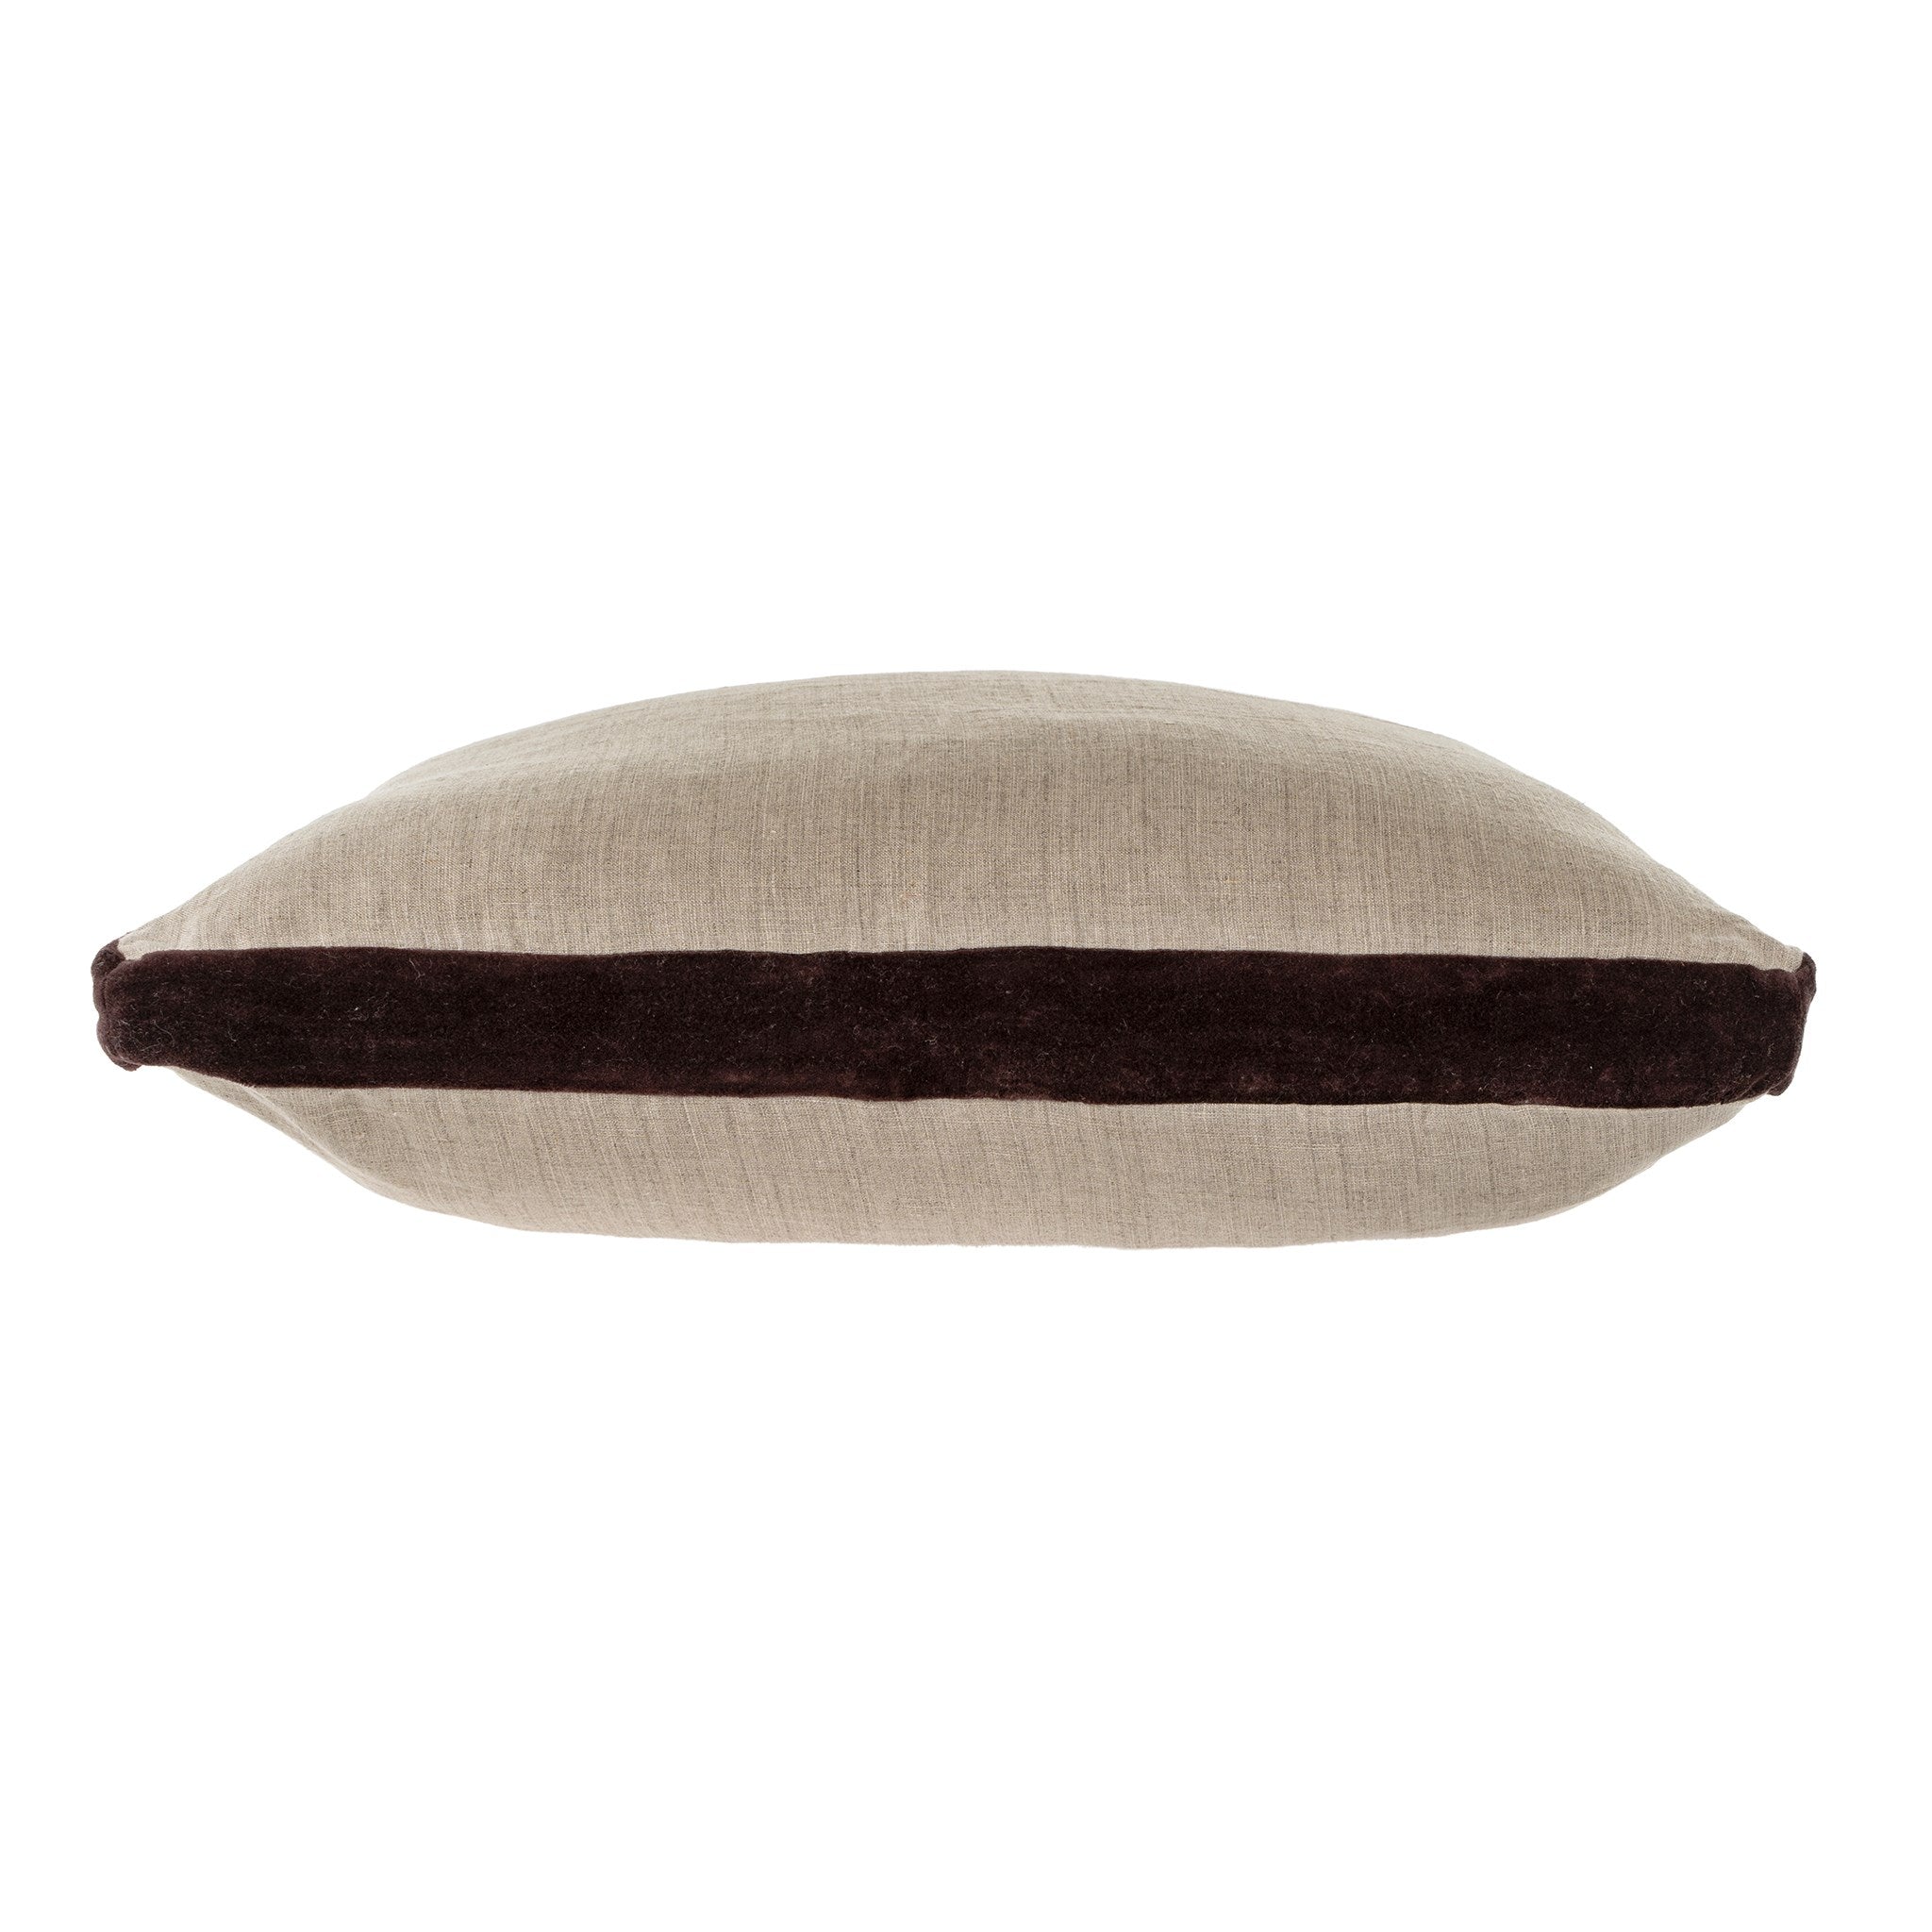 Cacao Trim Pillow, 20 x 20